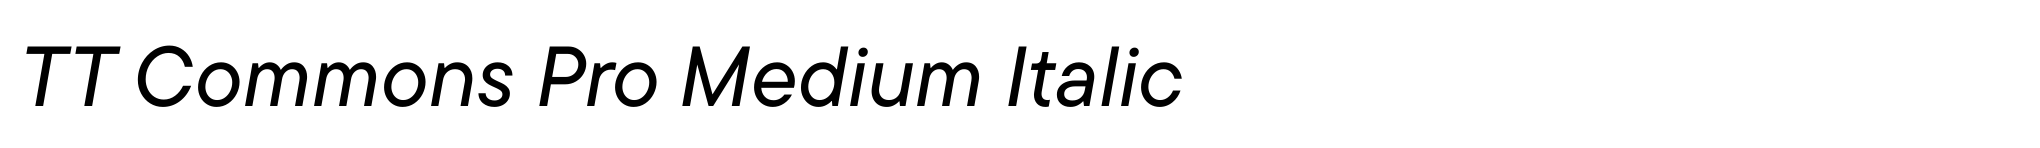 TT Commons Pro Medium Italic image